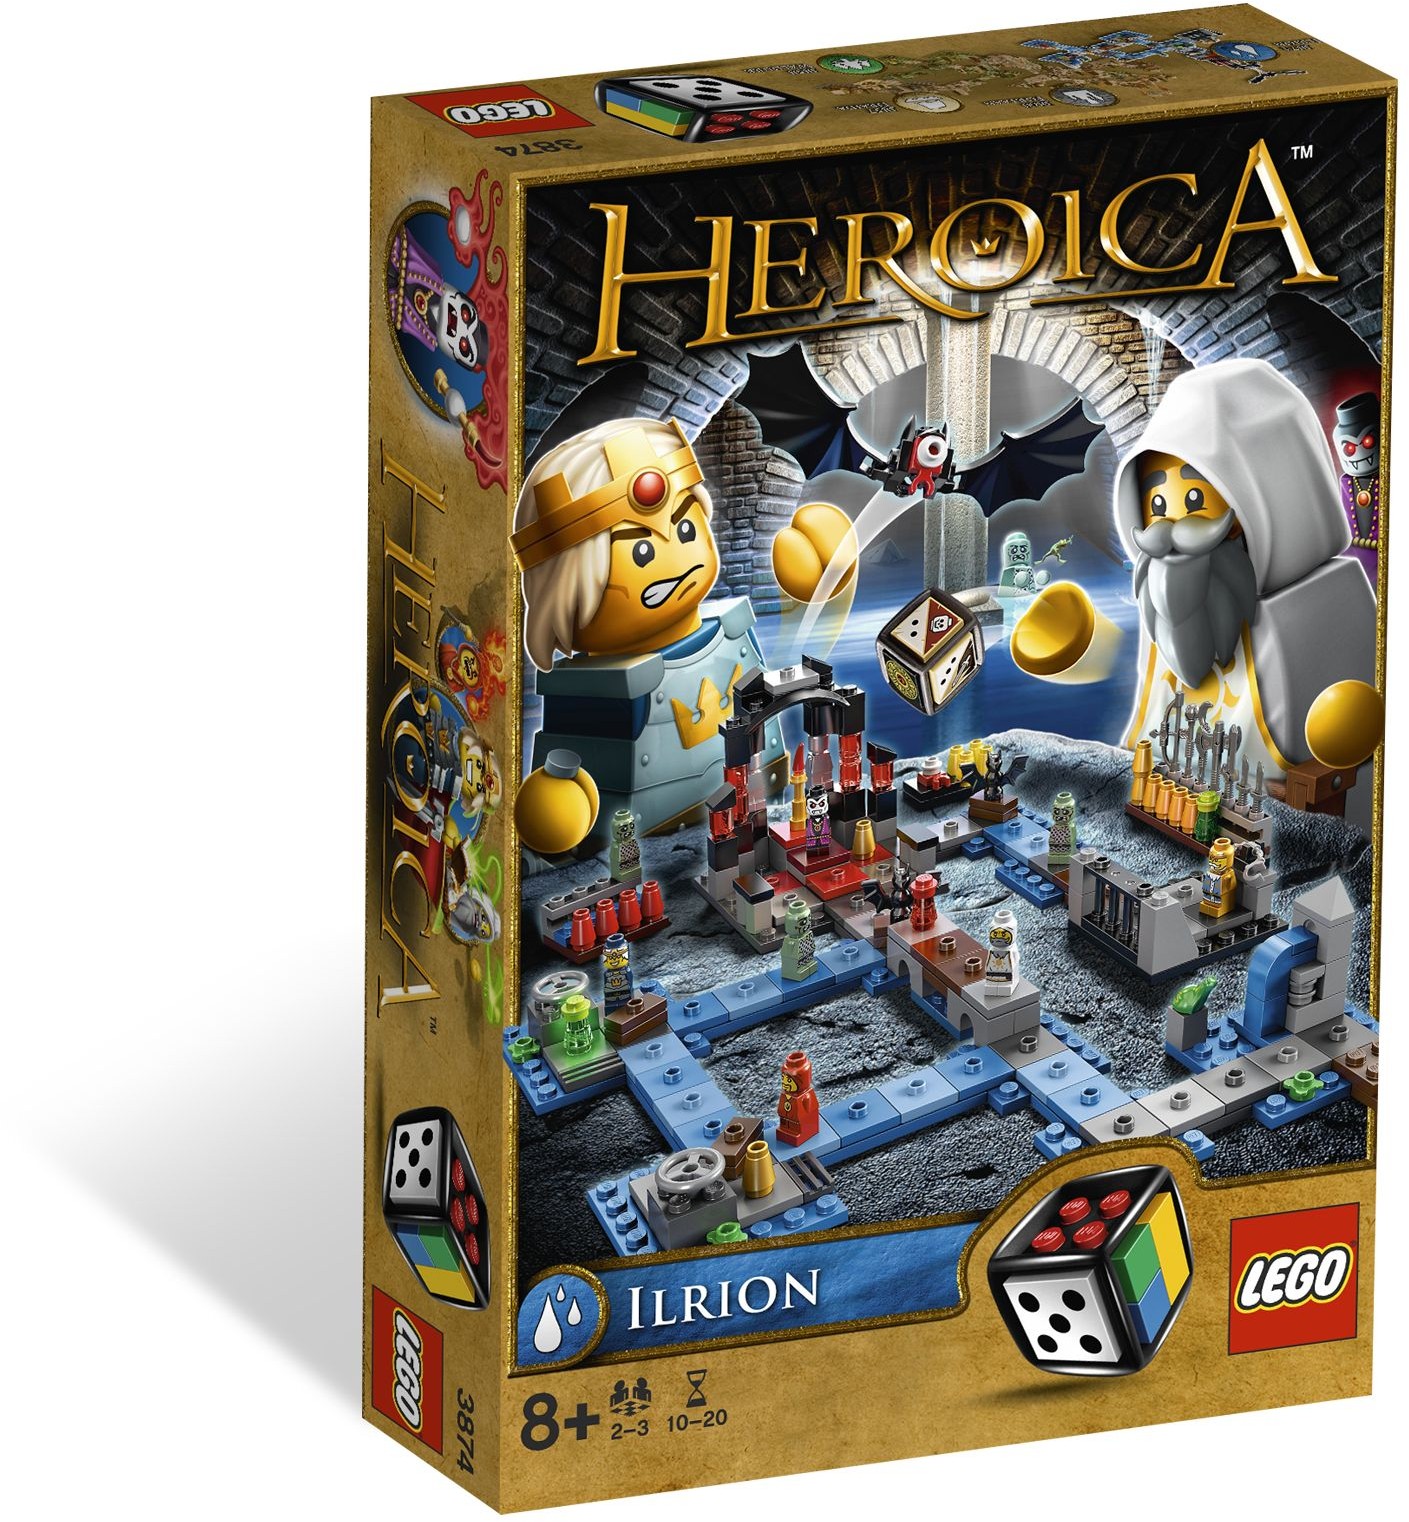 Games | Heroica | Brickset: LEGO set 